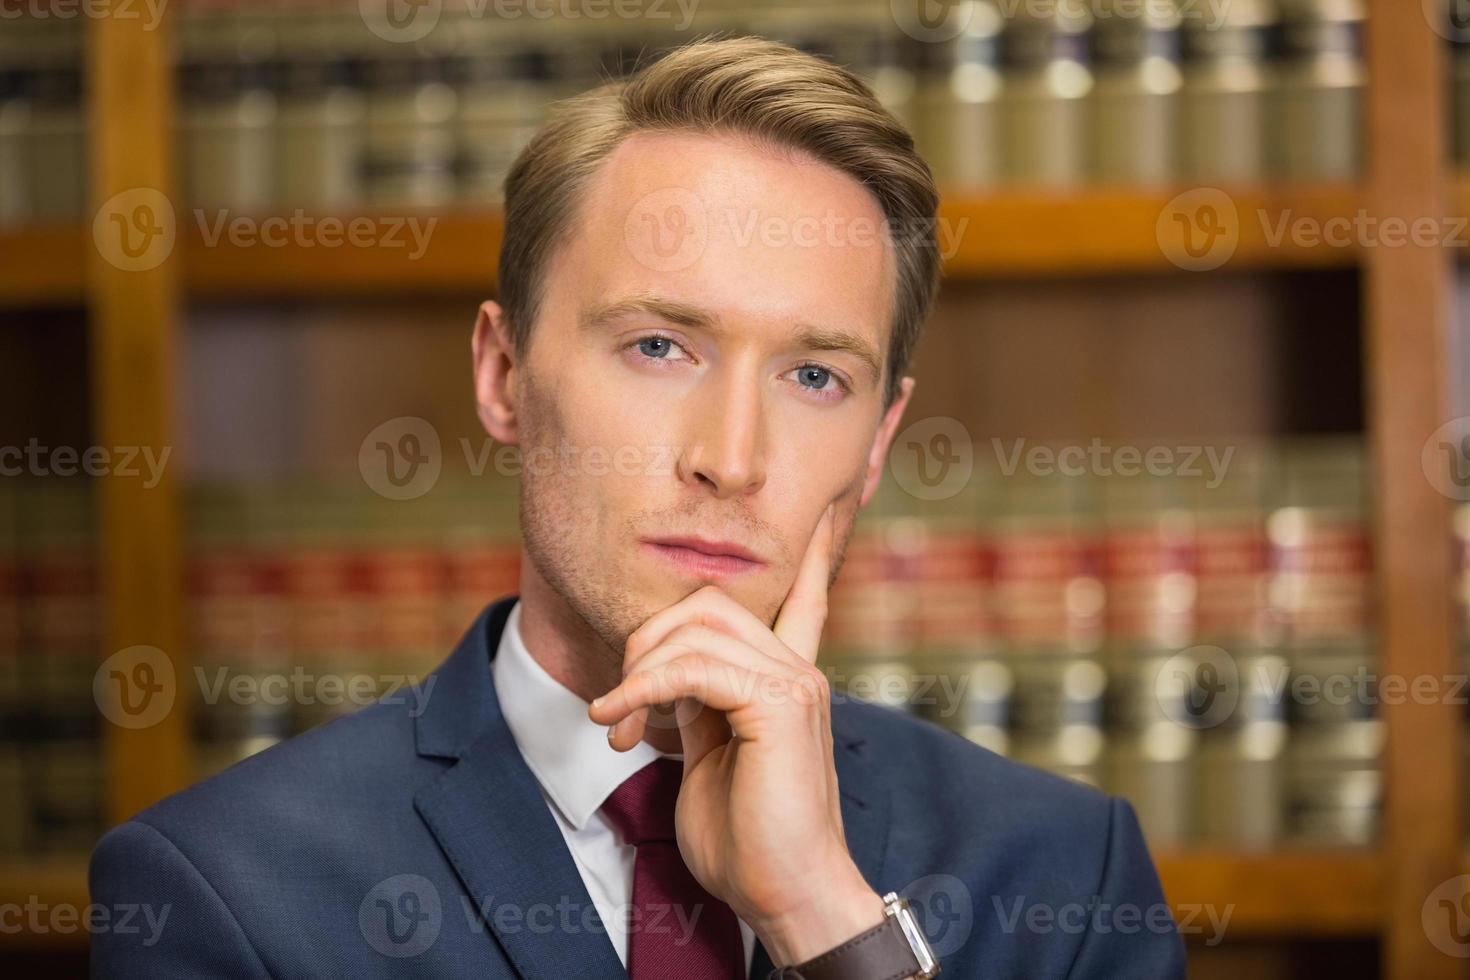 hübscher Anwalt in der Rechtsbibliothek foto